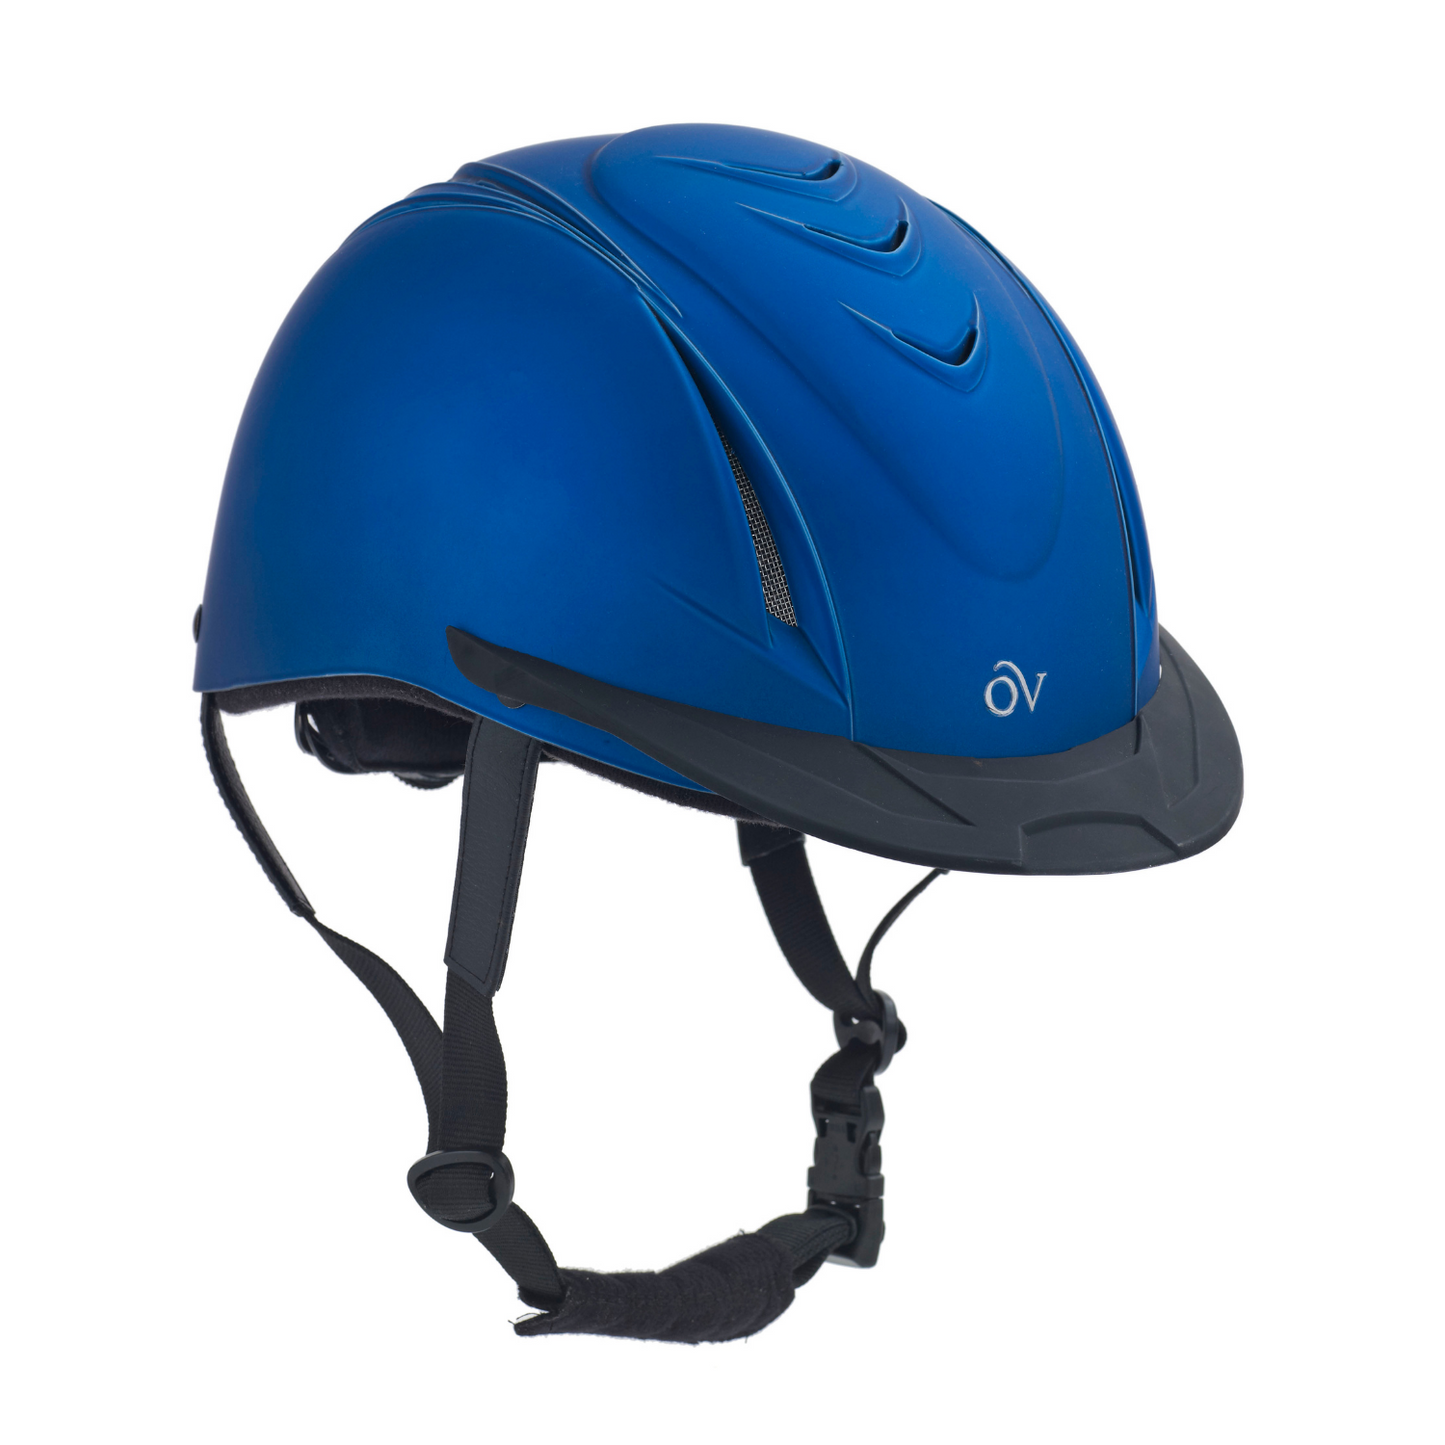 Ovation® Metallic Schooler Helmet